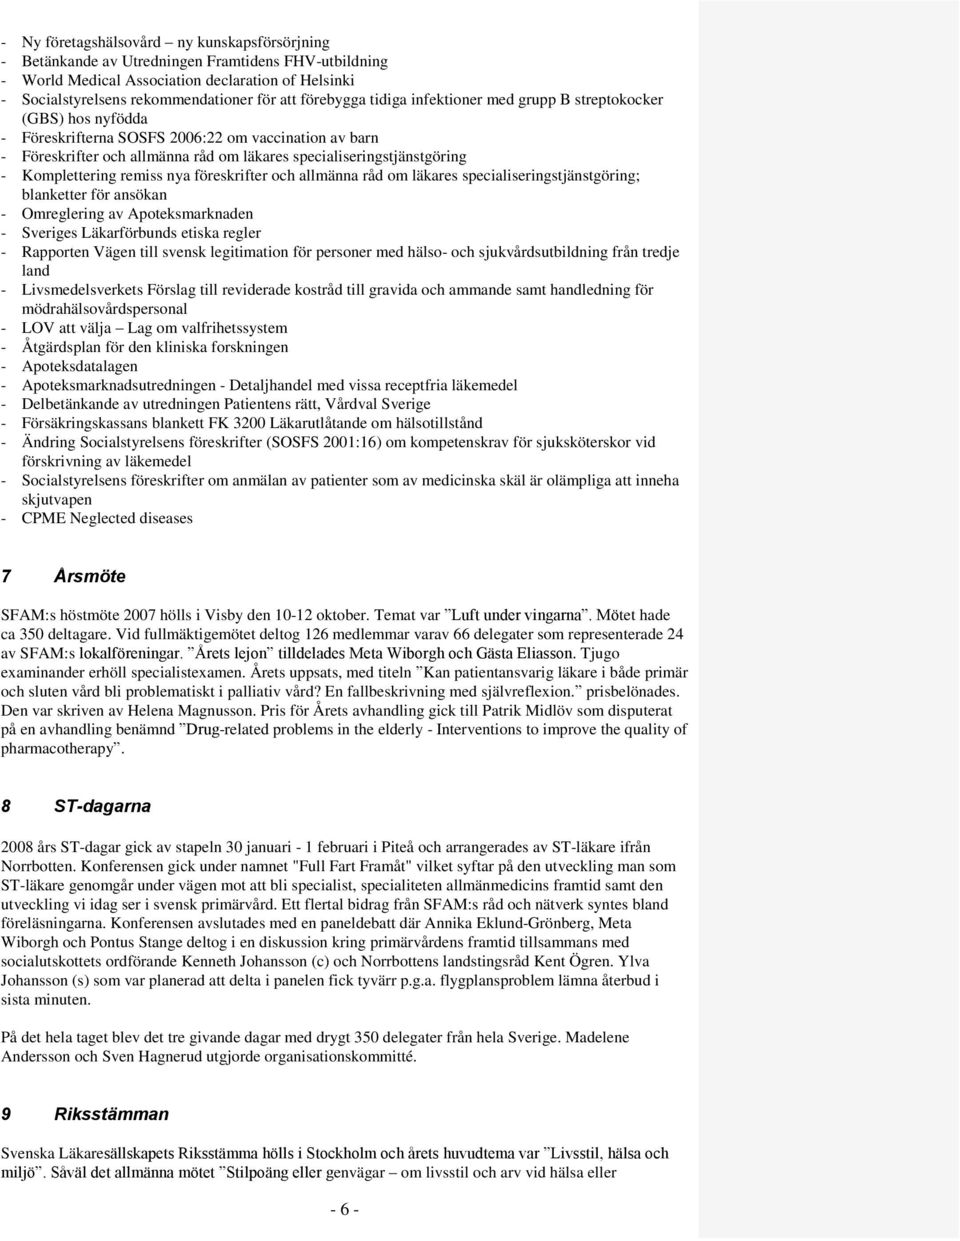 Komplettering remiss nya föreskrifter och allmänna råd om läkares specialiseringstjänstgöring; blanketter för ansökan - Omreglering av Apoteksmarknaden - Sveriges Läkarförbunds etiska regler -